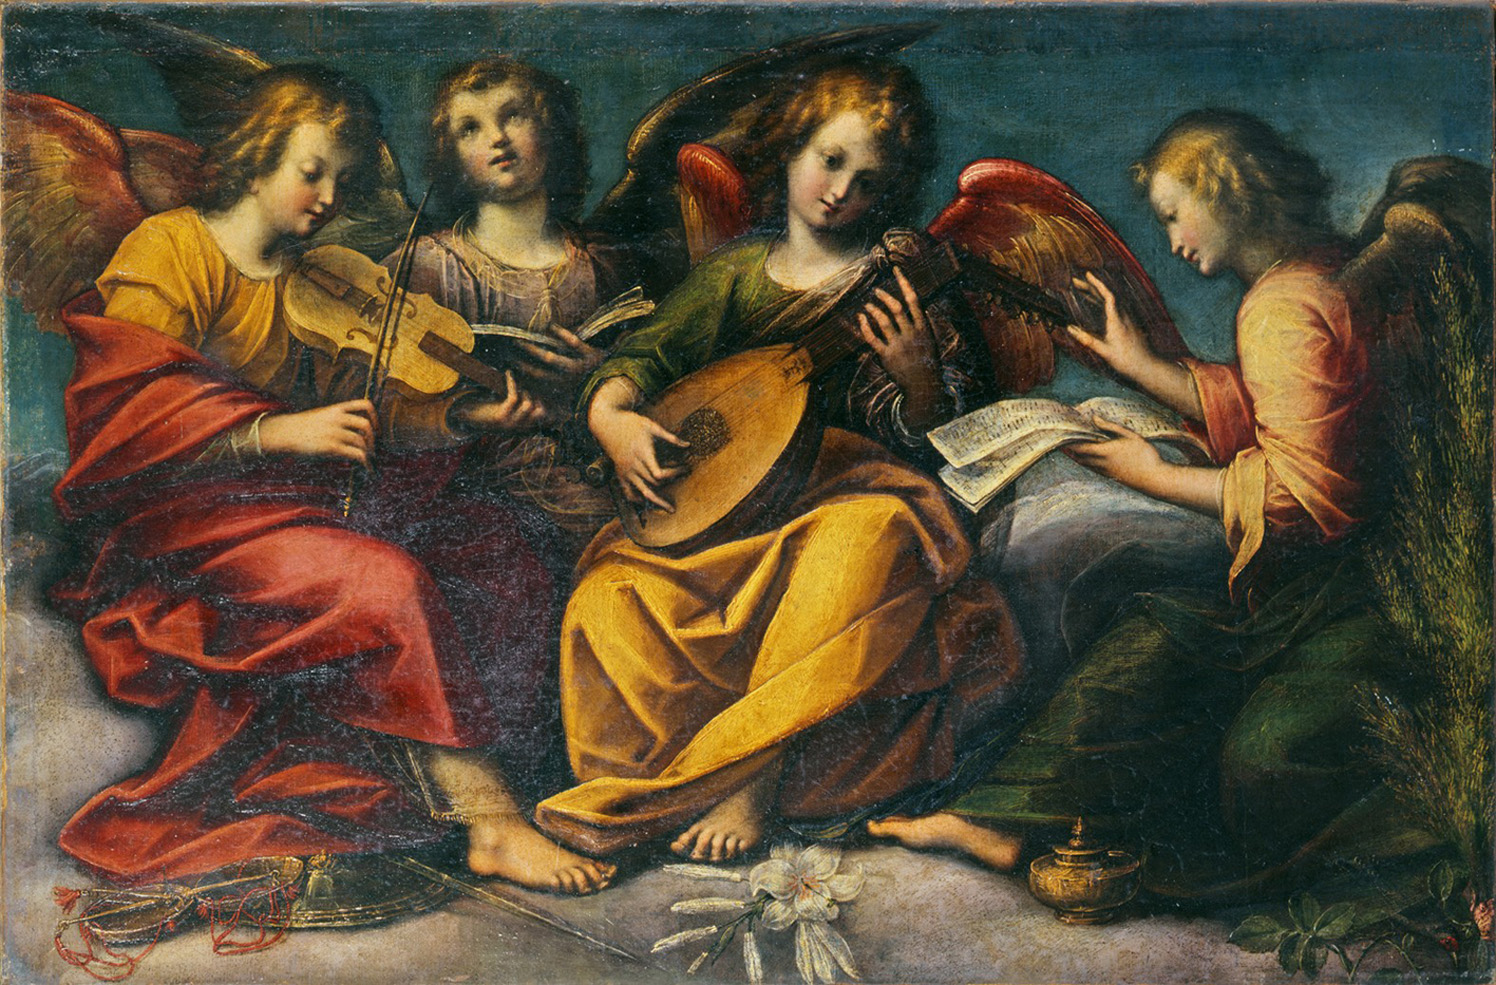 Casale Monferrato: Notte d’Arte con gli angeli, il 3 agosto